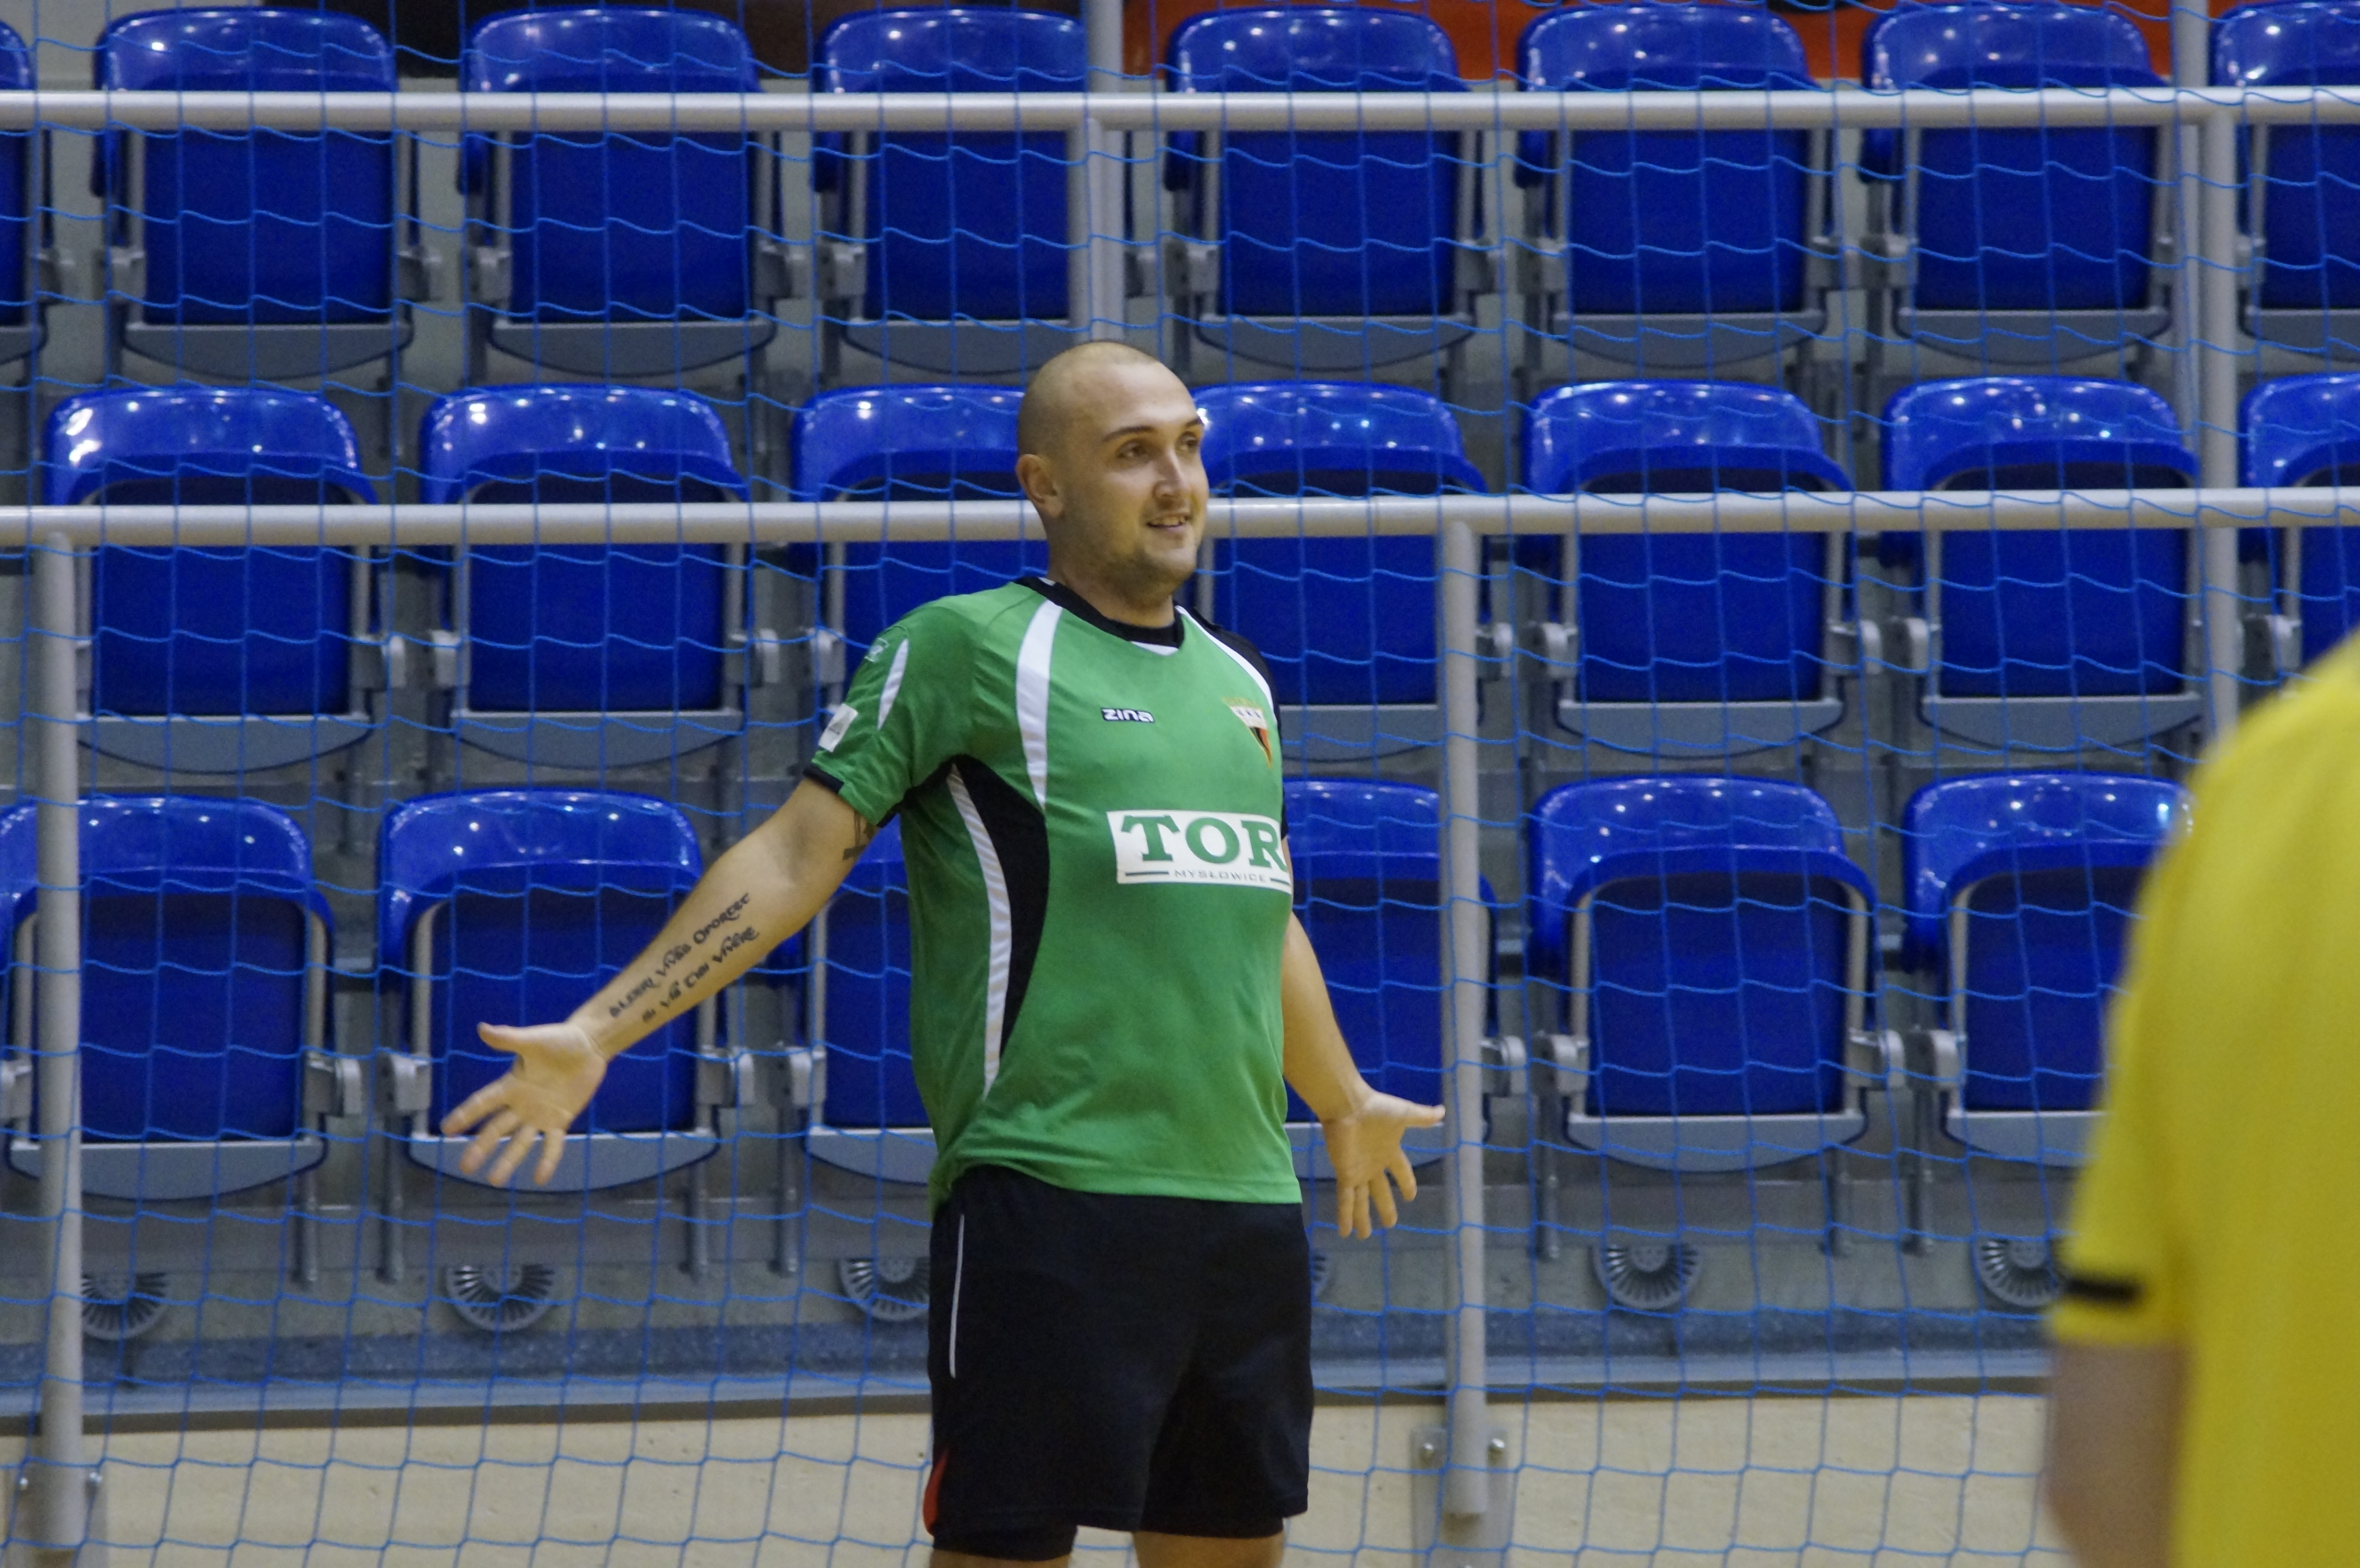 Futsalowy szlagier dla GKS!